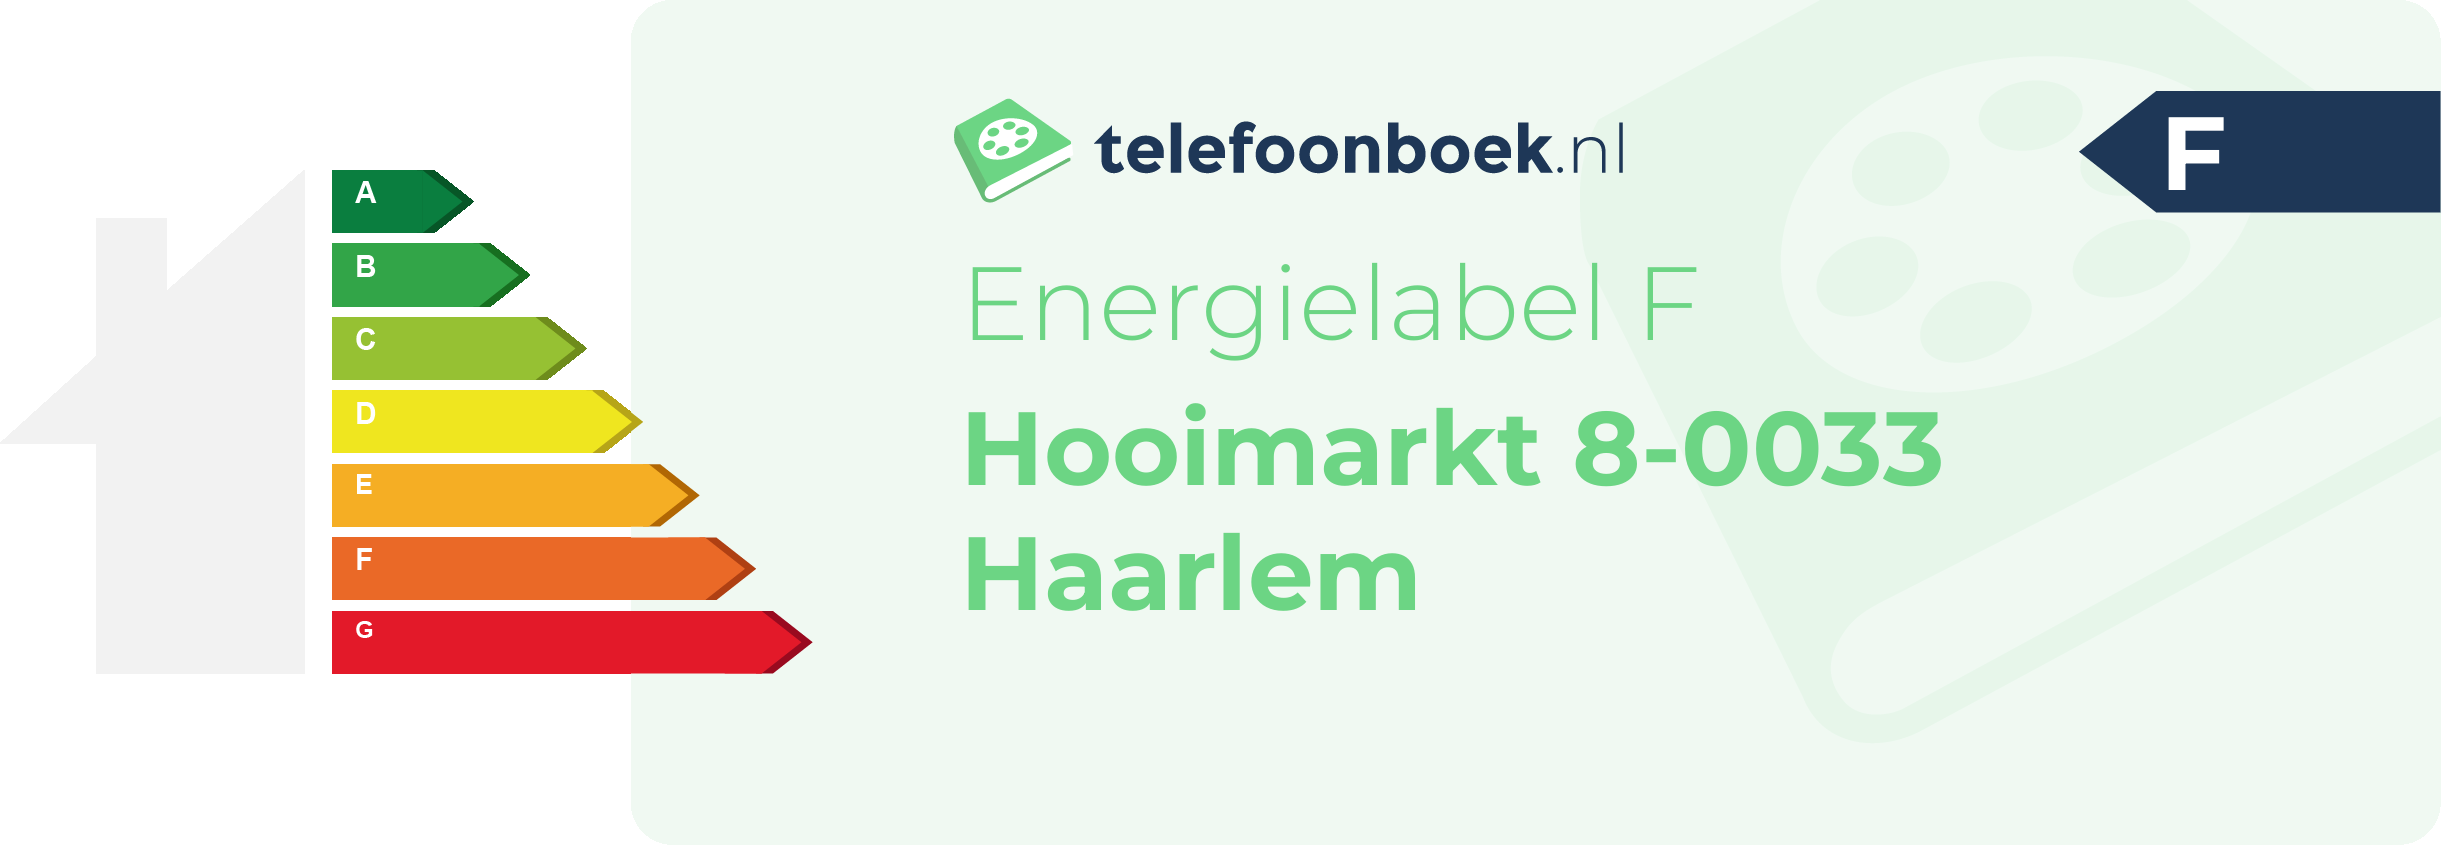 Energielabel Hooimarkt 8-0033 Haarlem